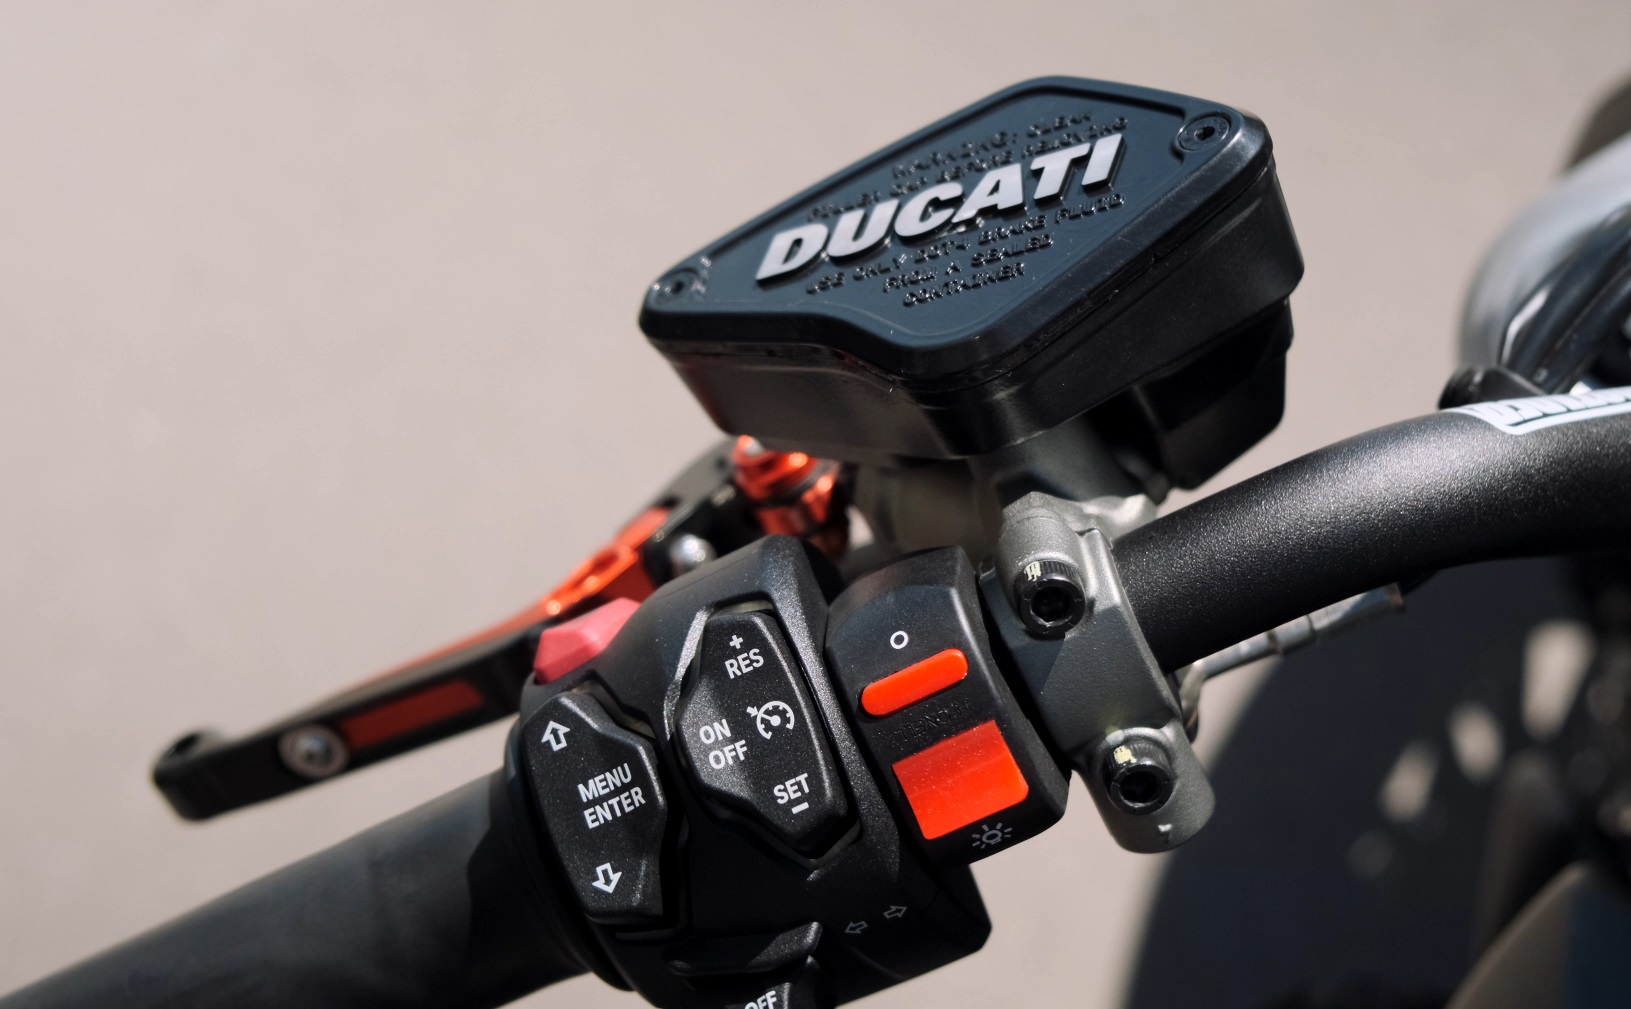 ИНМОТО ТЕСТ: Ducati X Diavel 1260